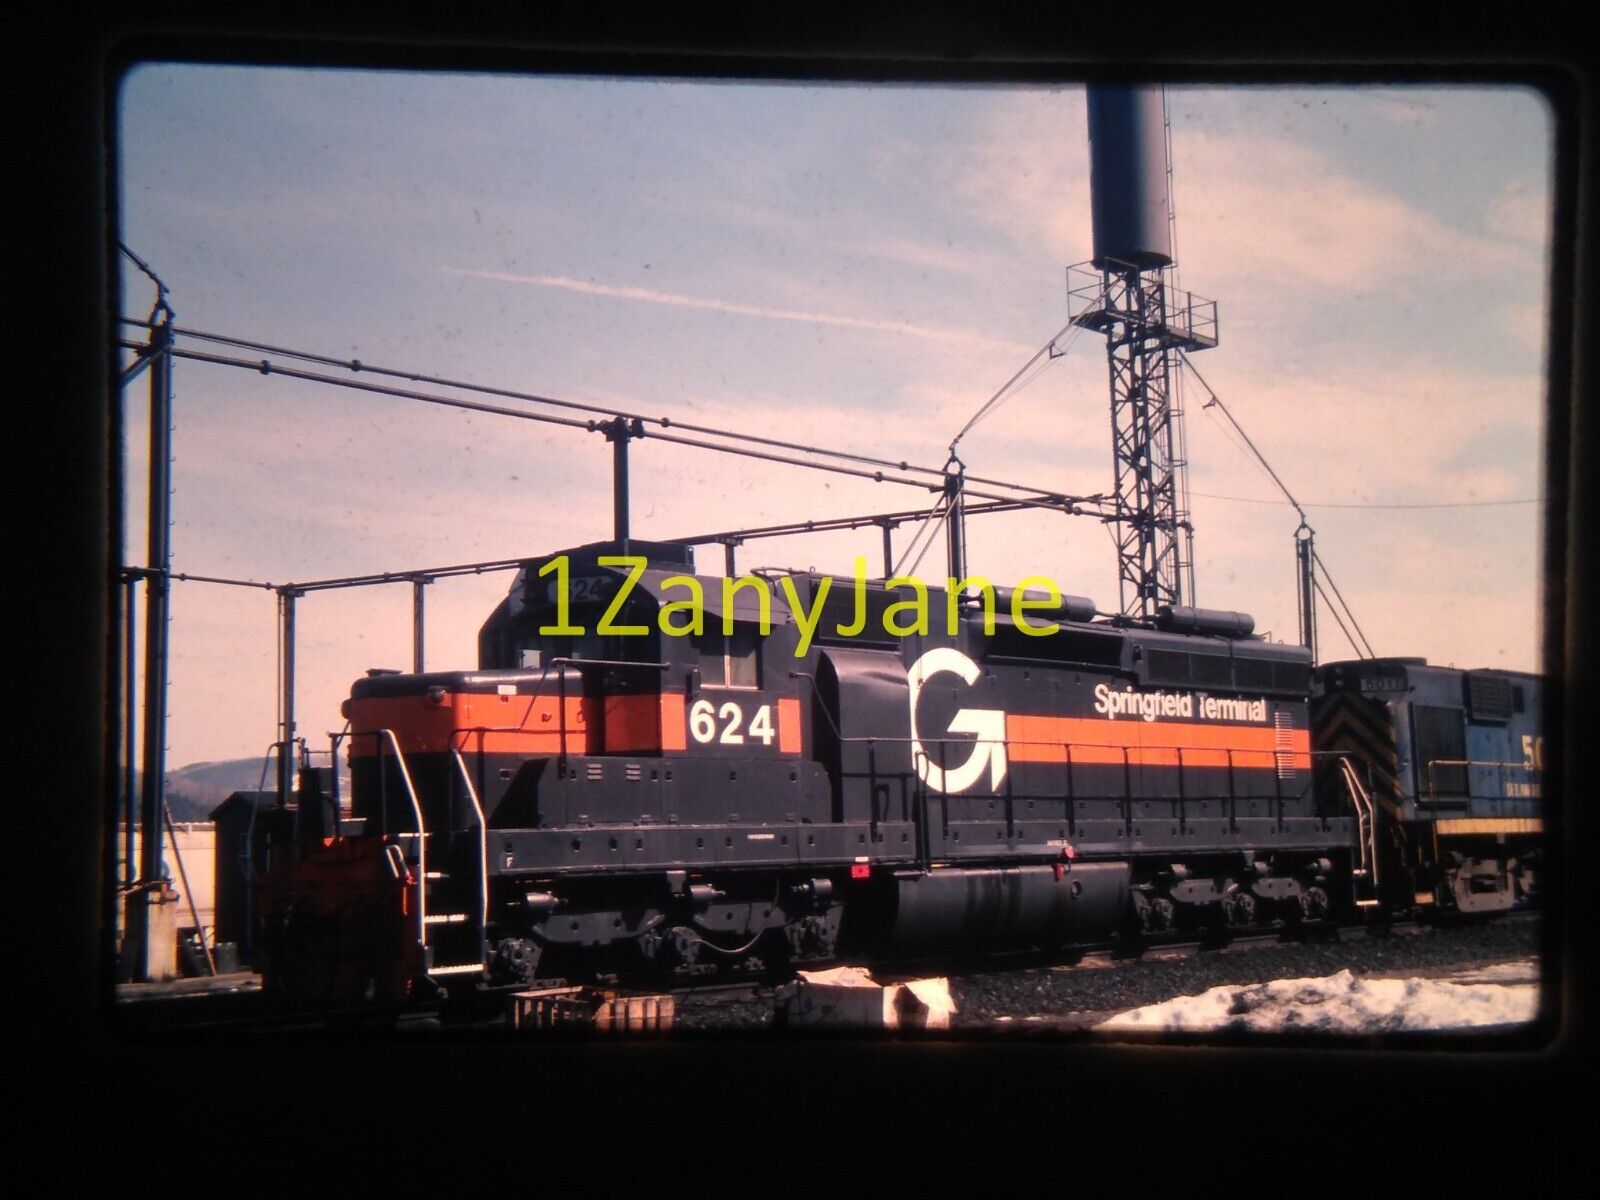 HJ20 35MM TRAIN SLIDE Photo Engine Locomotive SRNJ 728, SALEM, NJ 1996